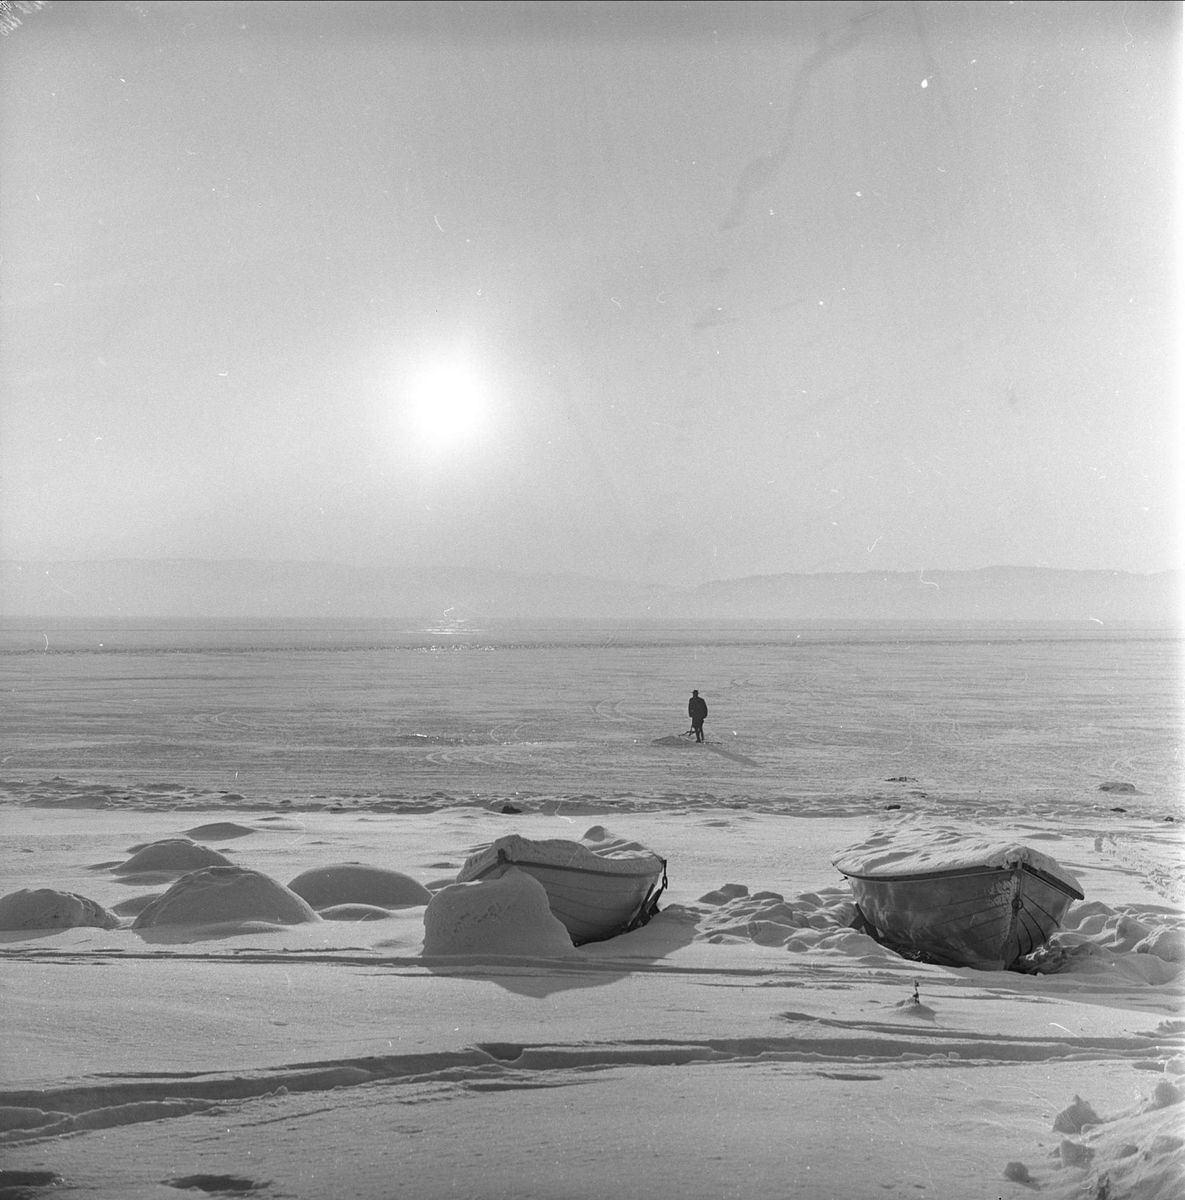 Div. glimt fra Hamar i forbindelse med NM på skøyter, 15.01.1963. Mann på spark, islagt Mjøsa, med båter dekket av snø.